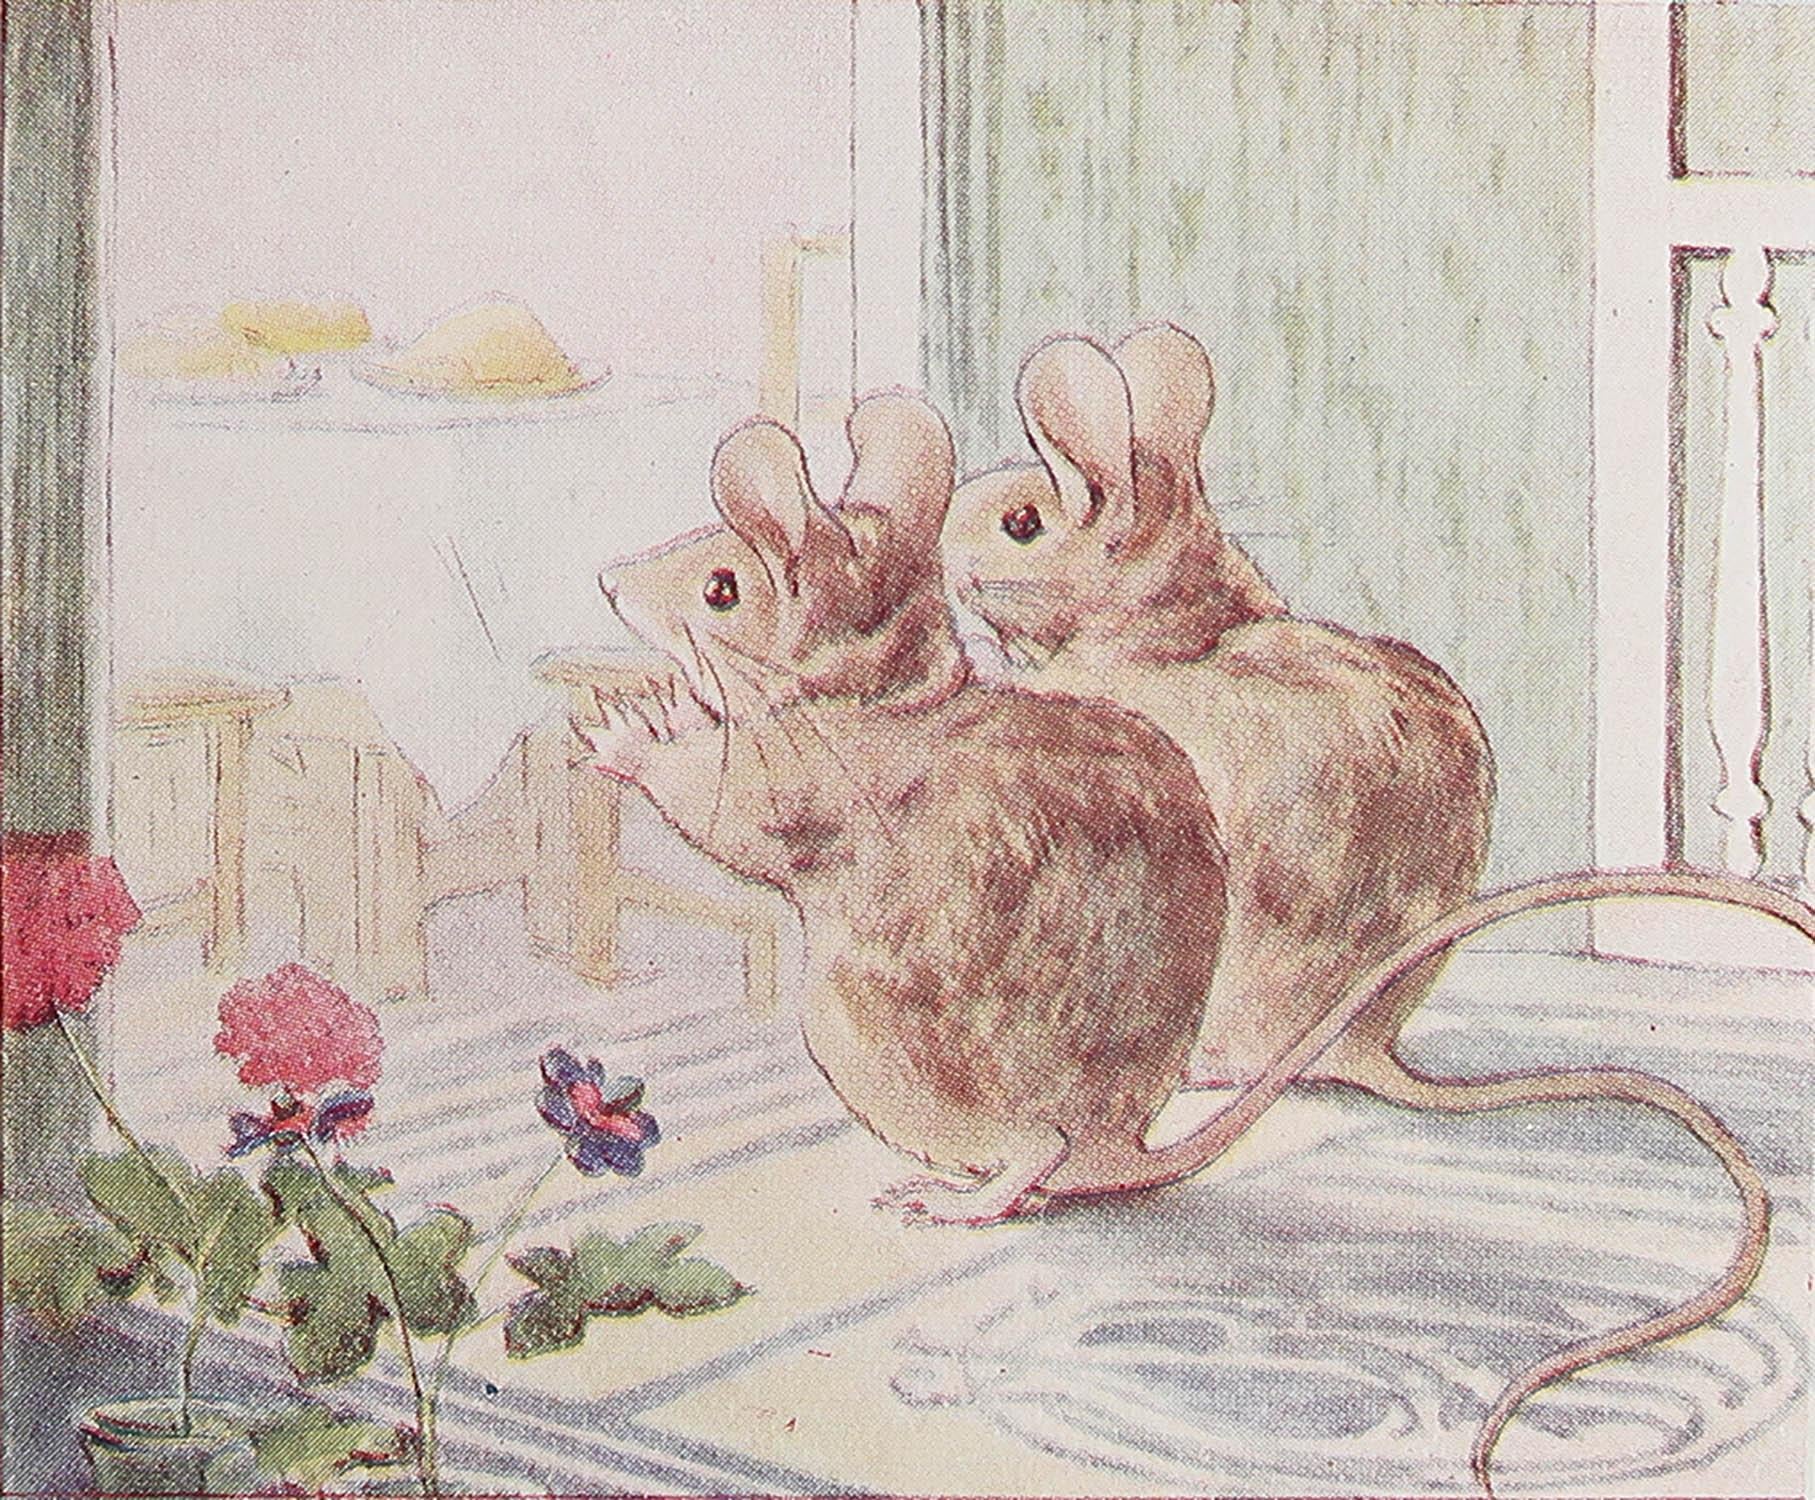 Wunderschönes Bild von Beatrix Potter

Gerettet aus einer frühen Ausgabe von 